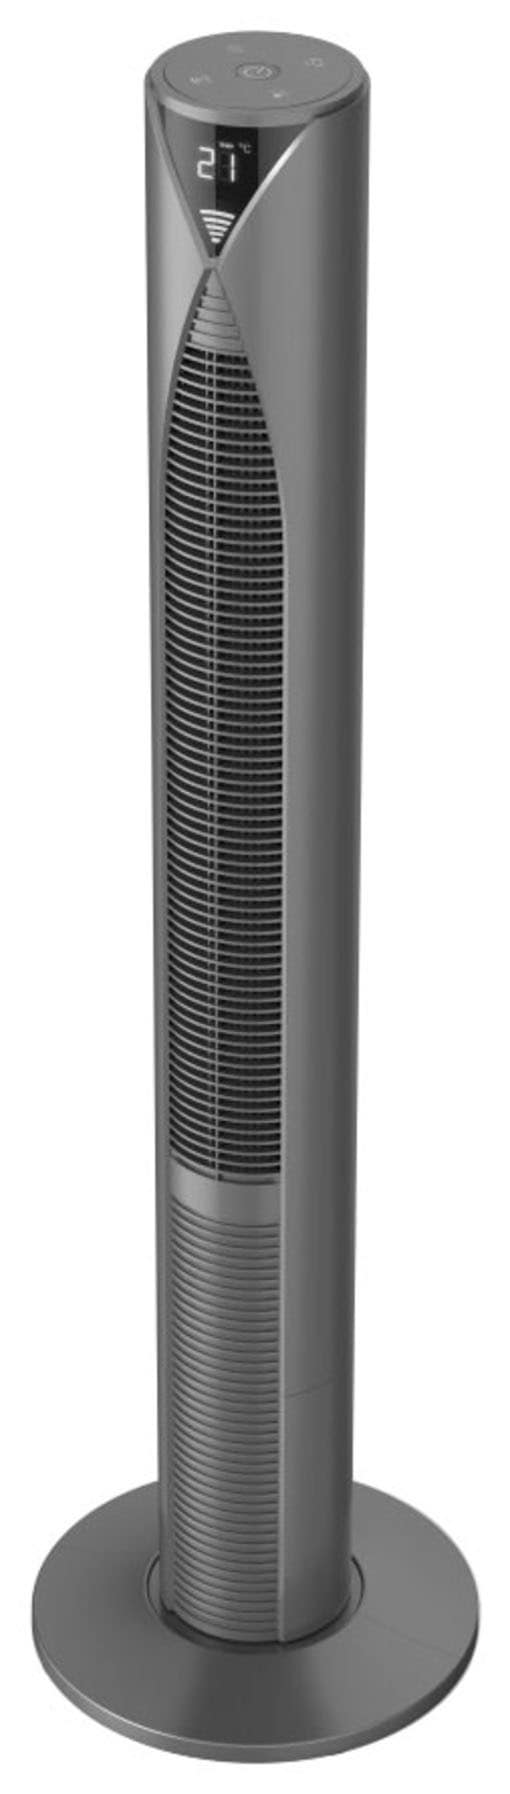 Hama Standventilator »Smarter Standventilator mit Fernbedienung 117cm, Turm, Displayanzeige«, 18,6 cm Durchmesser, 3 Geschwindigkeitsstufen, Timer, energiesparend mit Standby Modus